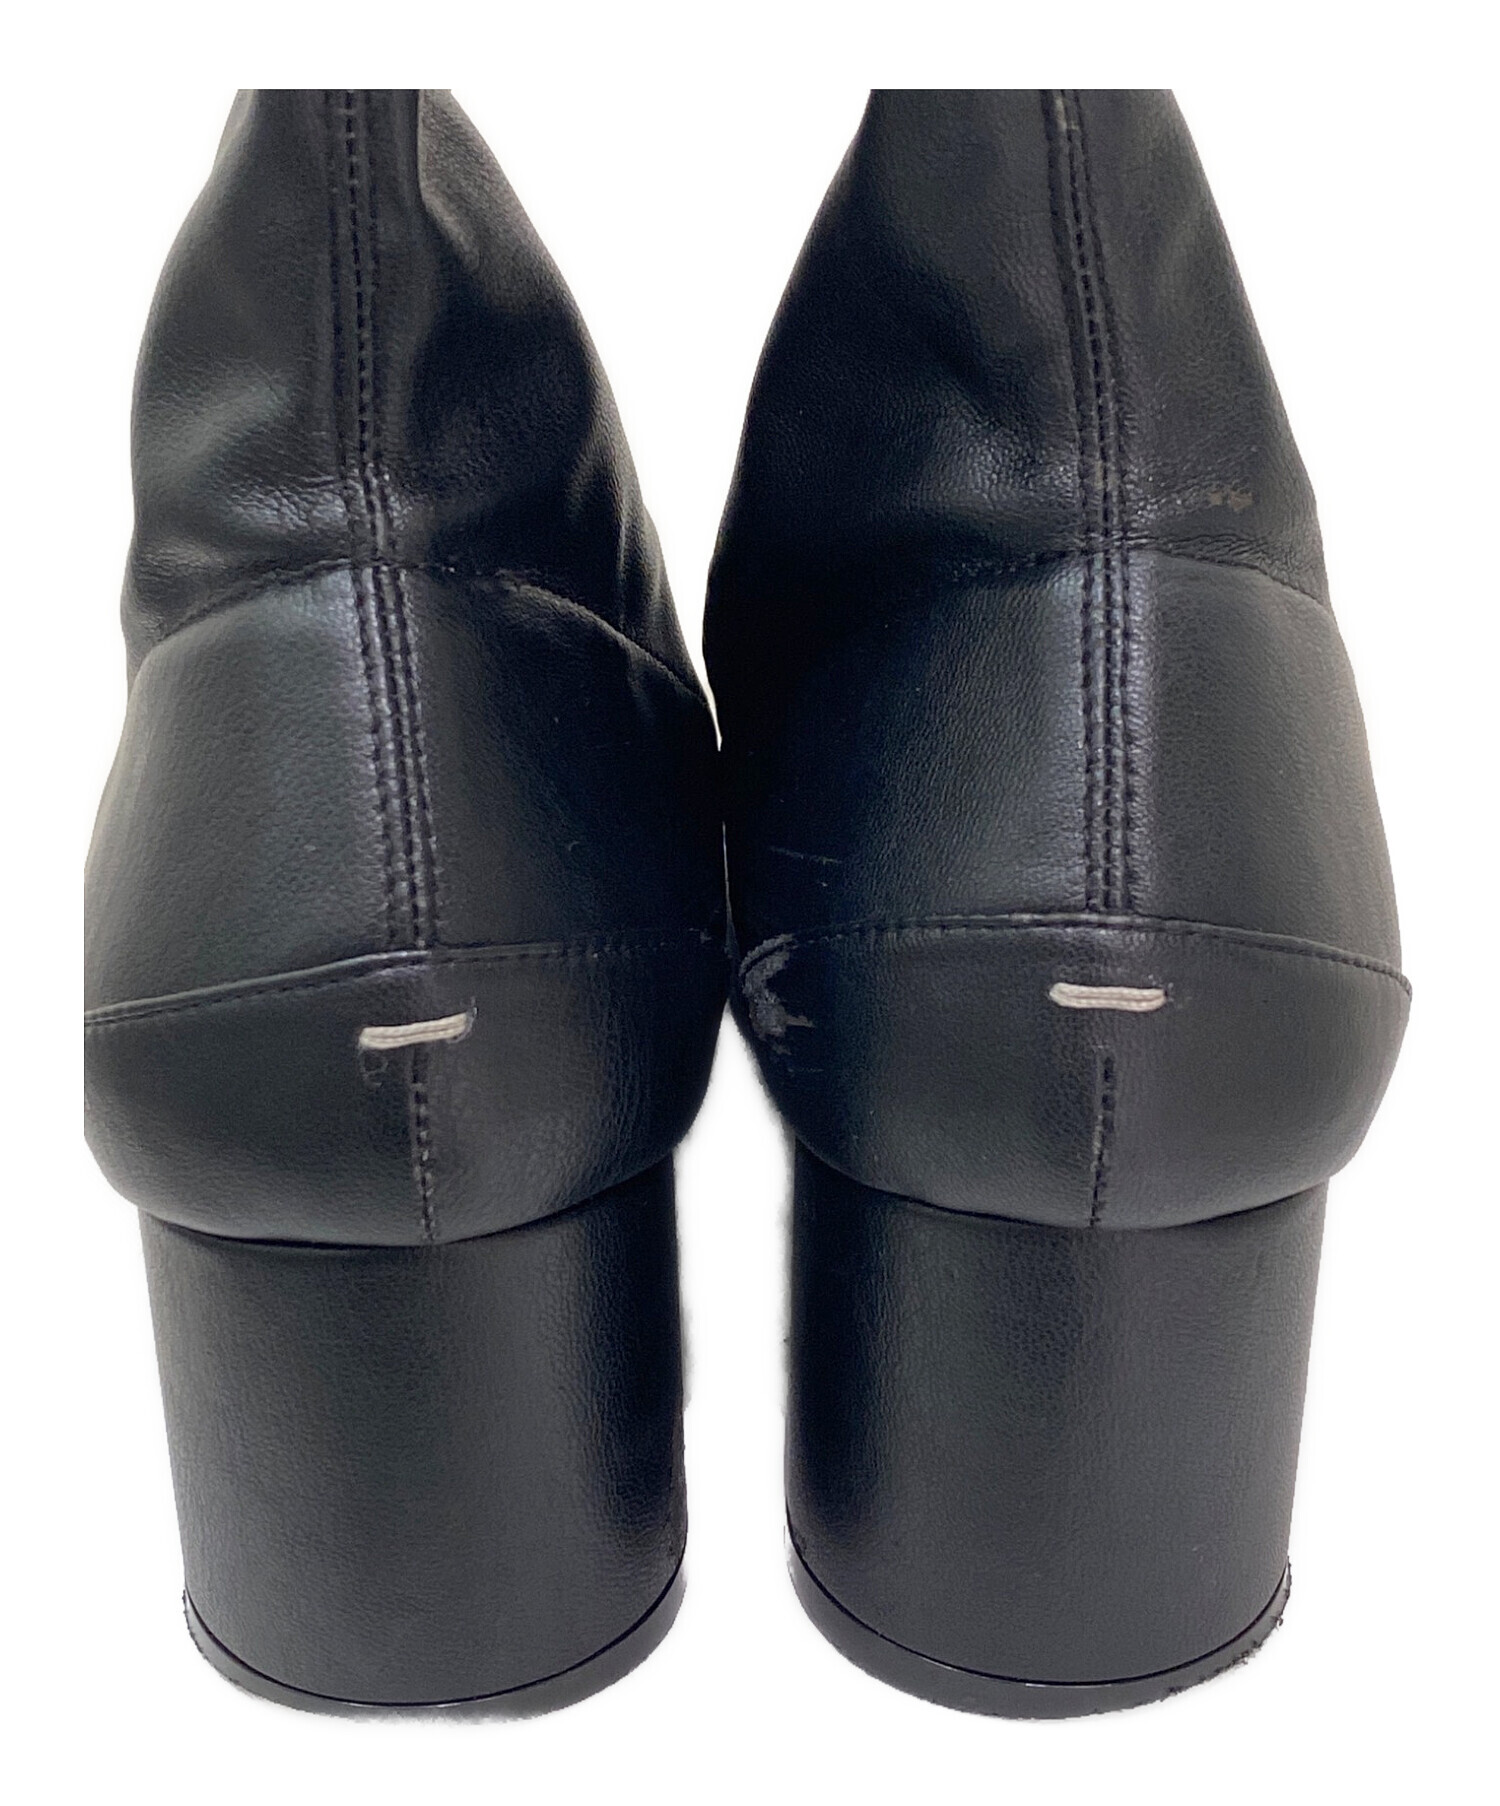 マルジェラ 足袋ブーツ 36.5 23.5 美品 ブラックブーツ - ブーツ